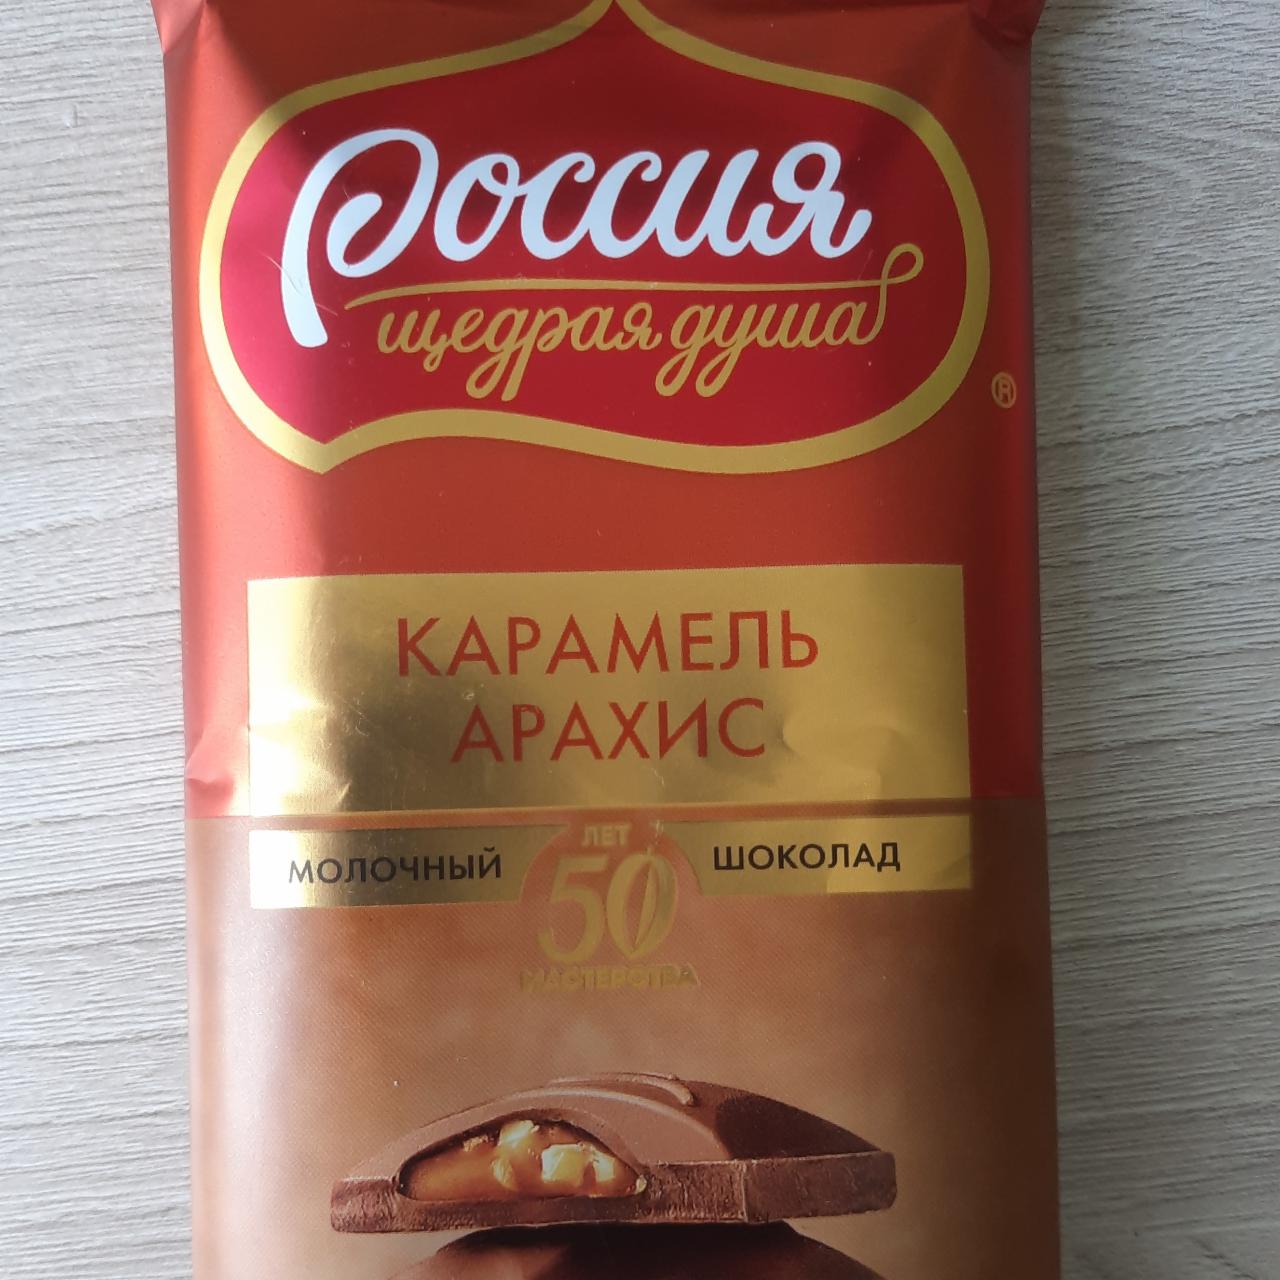 Фото - Молочный шоколад Карамель Арахис Россия щедрая душа